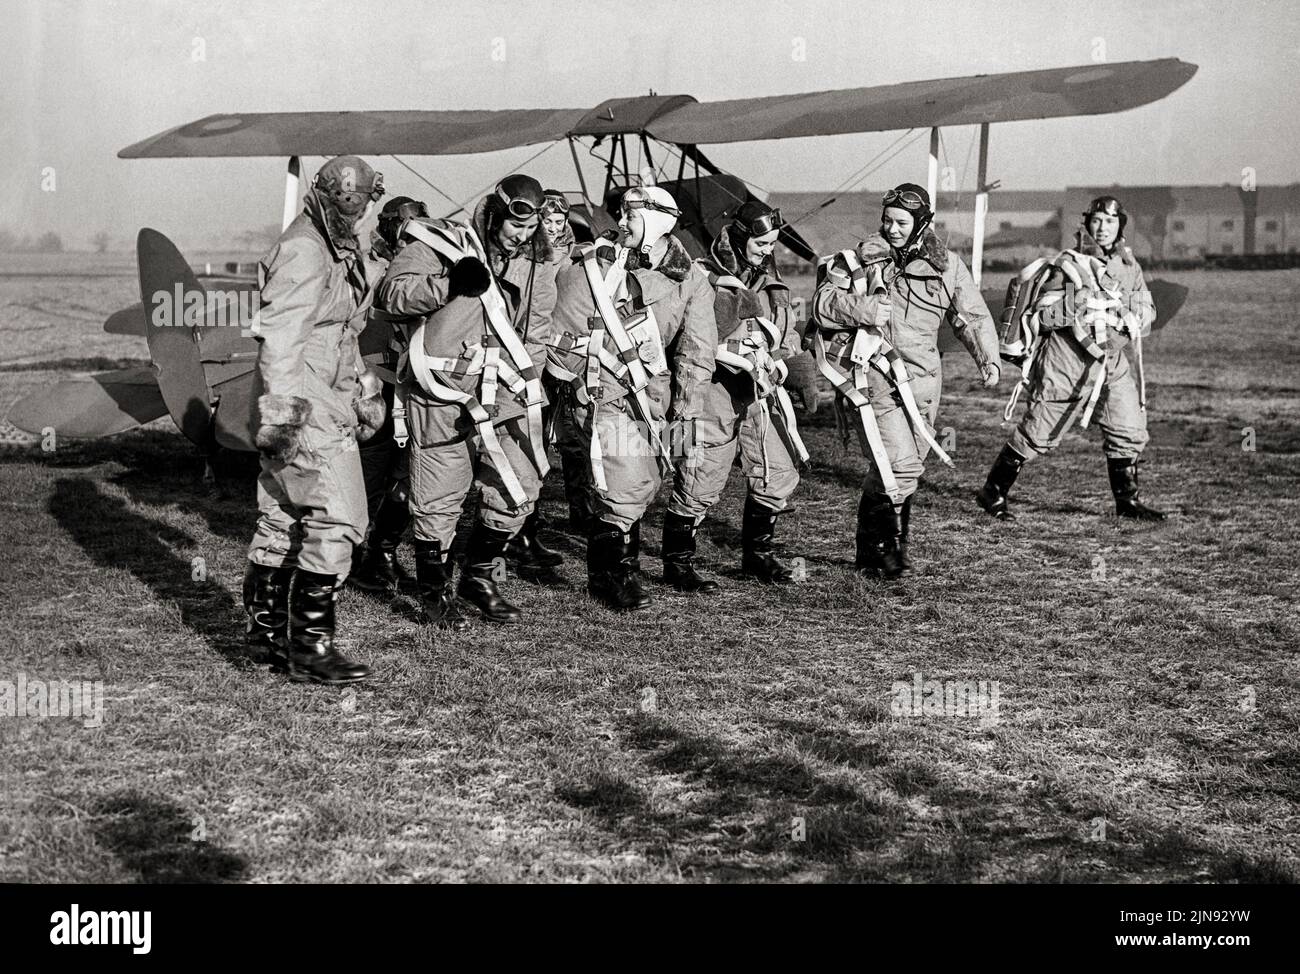 Con un addestratore di Tiger Moth, un gruppo di donne ausiliarie di trasporto aereo sono fotografate nel loro kit di volo a Hatfield, Hertfordshire, il 10 gennaio 1940. Foto Stock